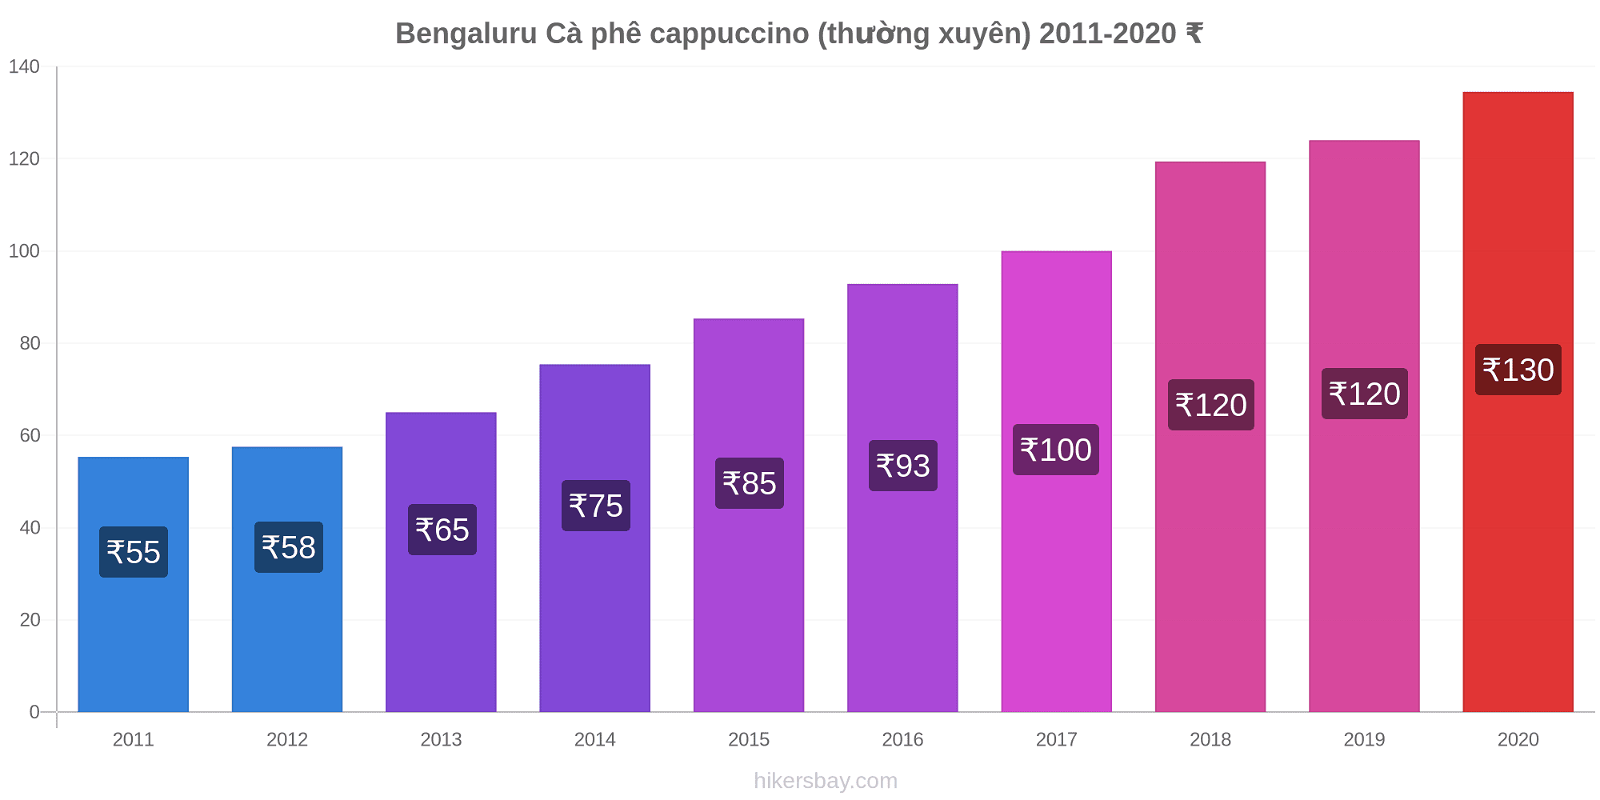 Bengaluru thay đổi giá Cà phê cappuccino (thường xuyên) hikersbay.com